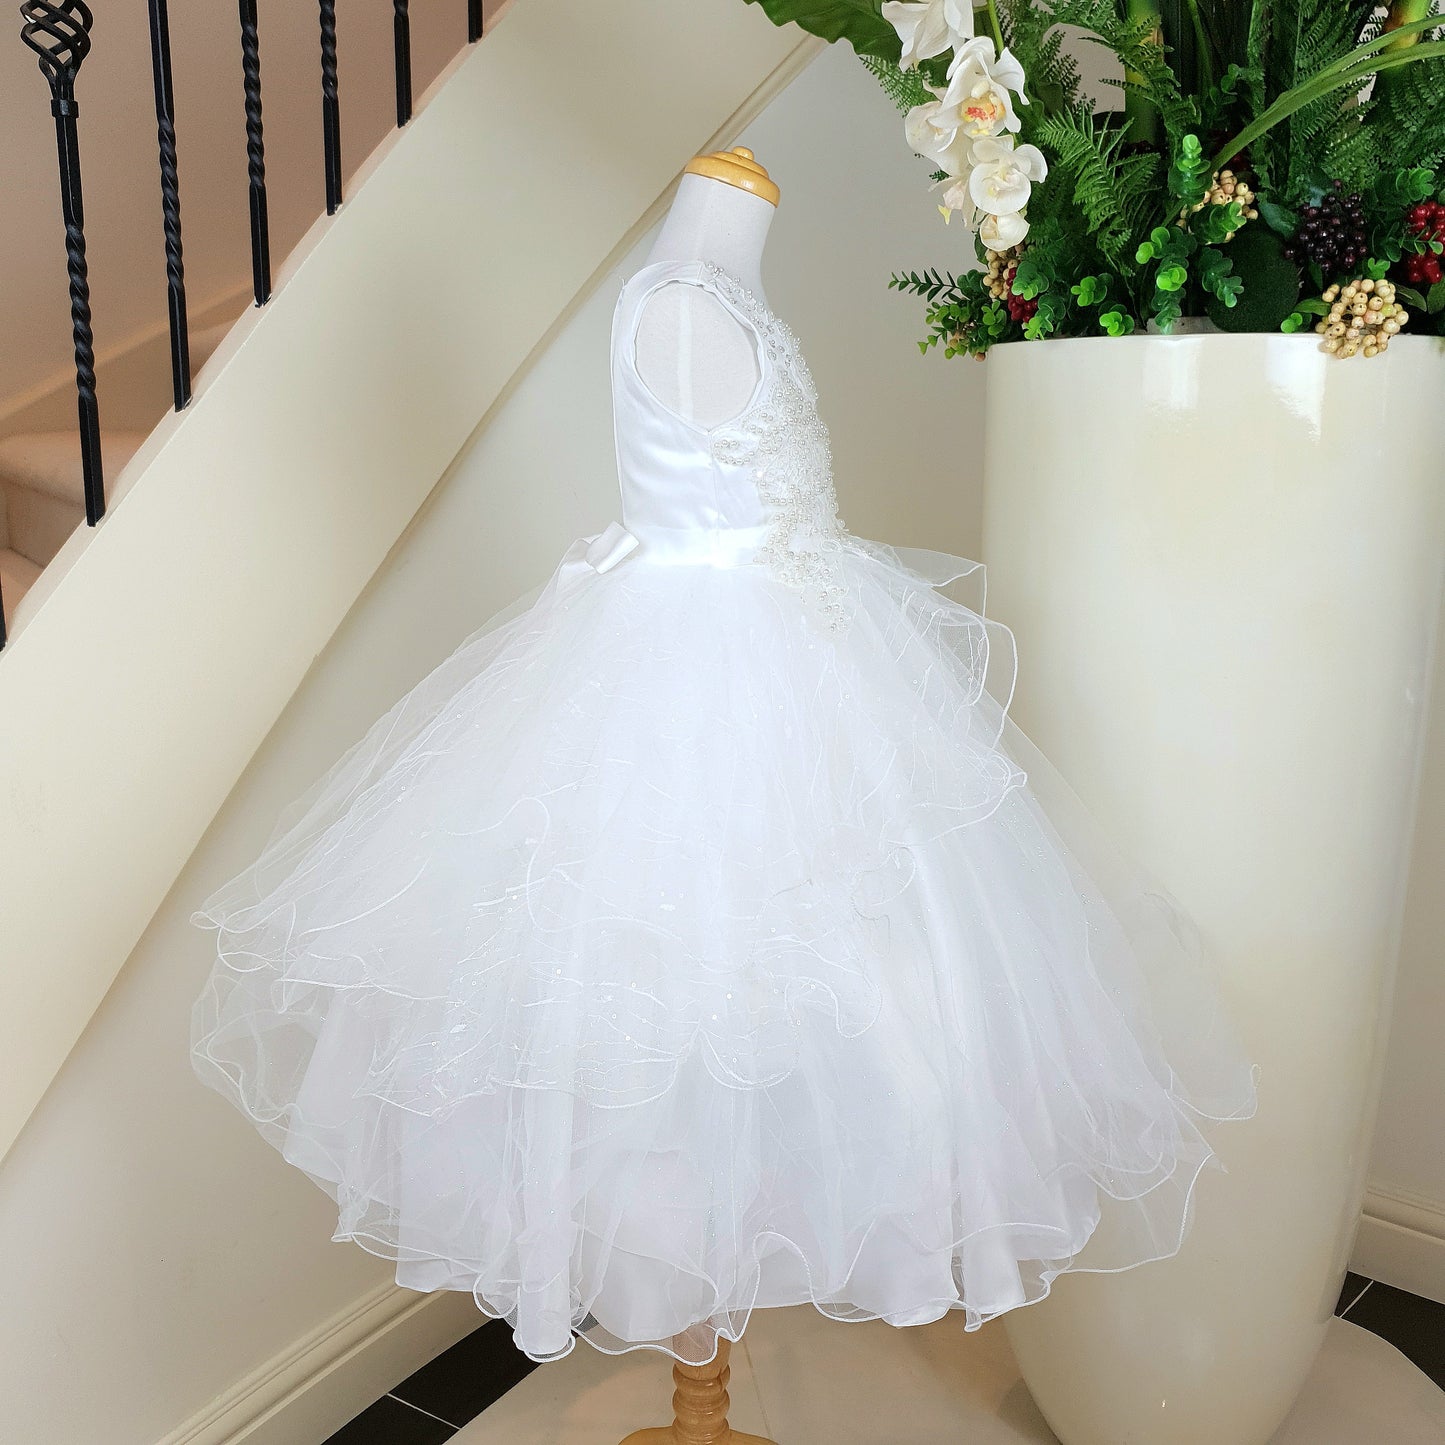 Elegant beaded bodice white dress